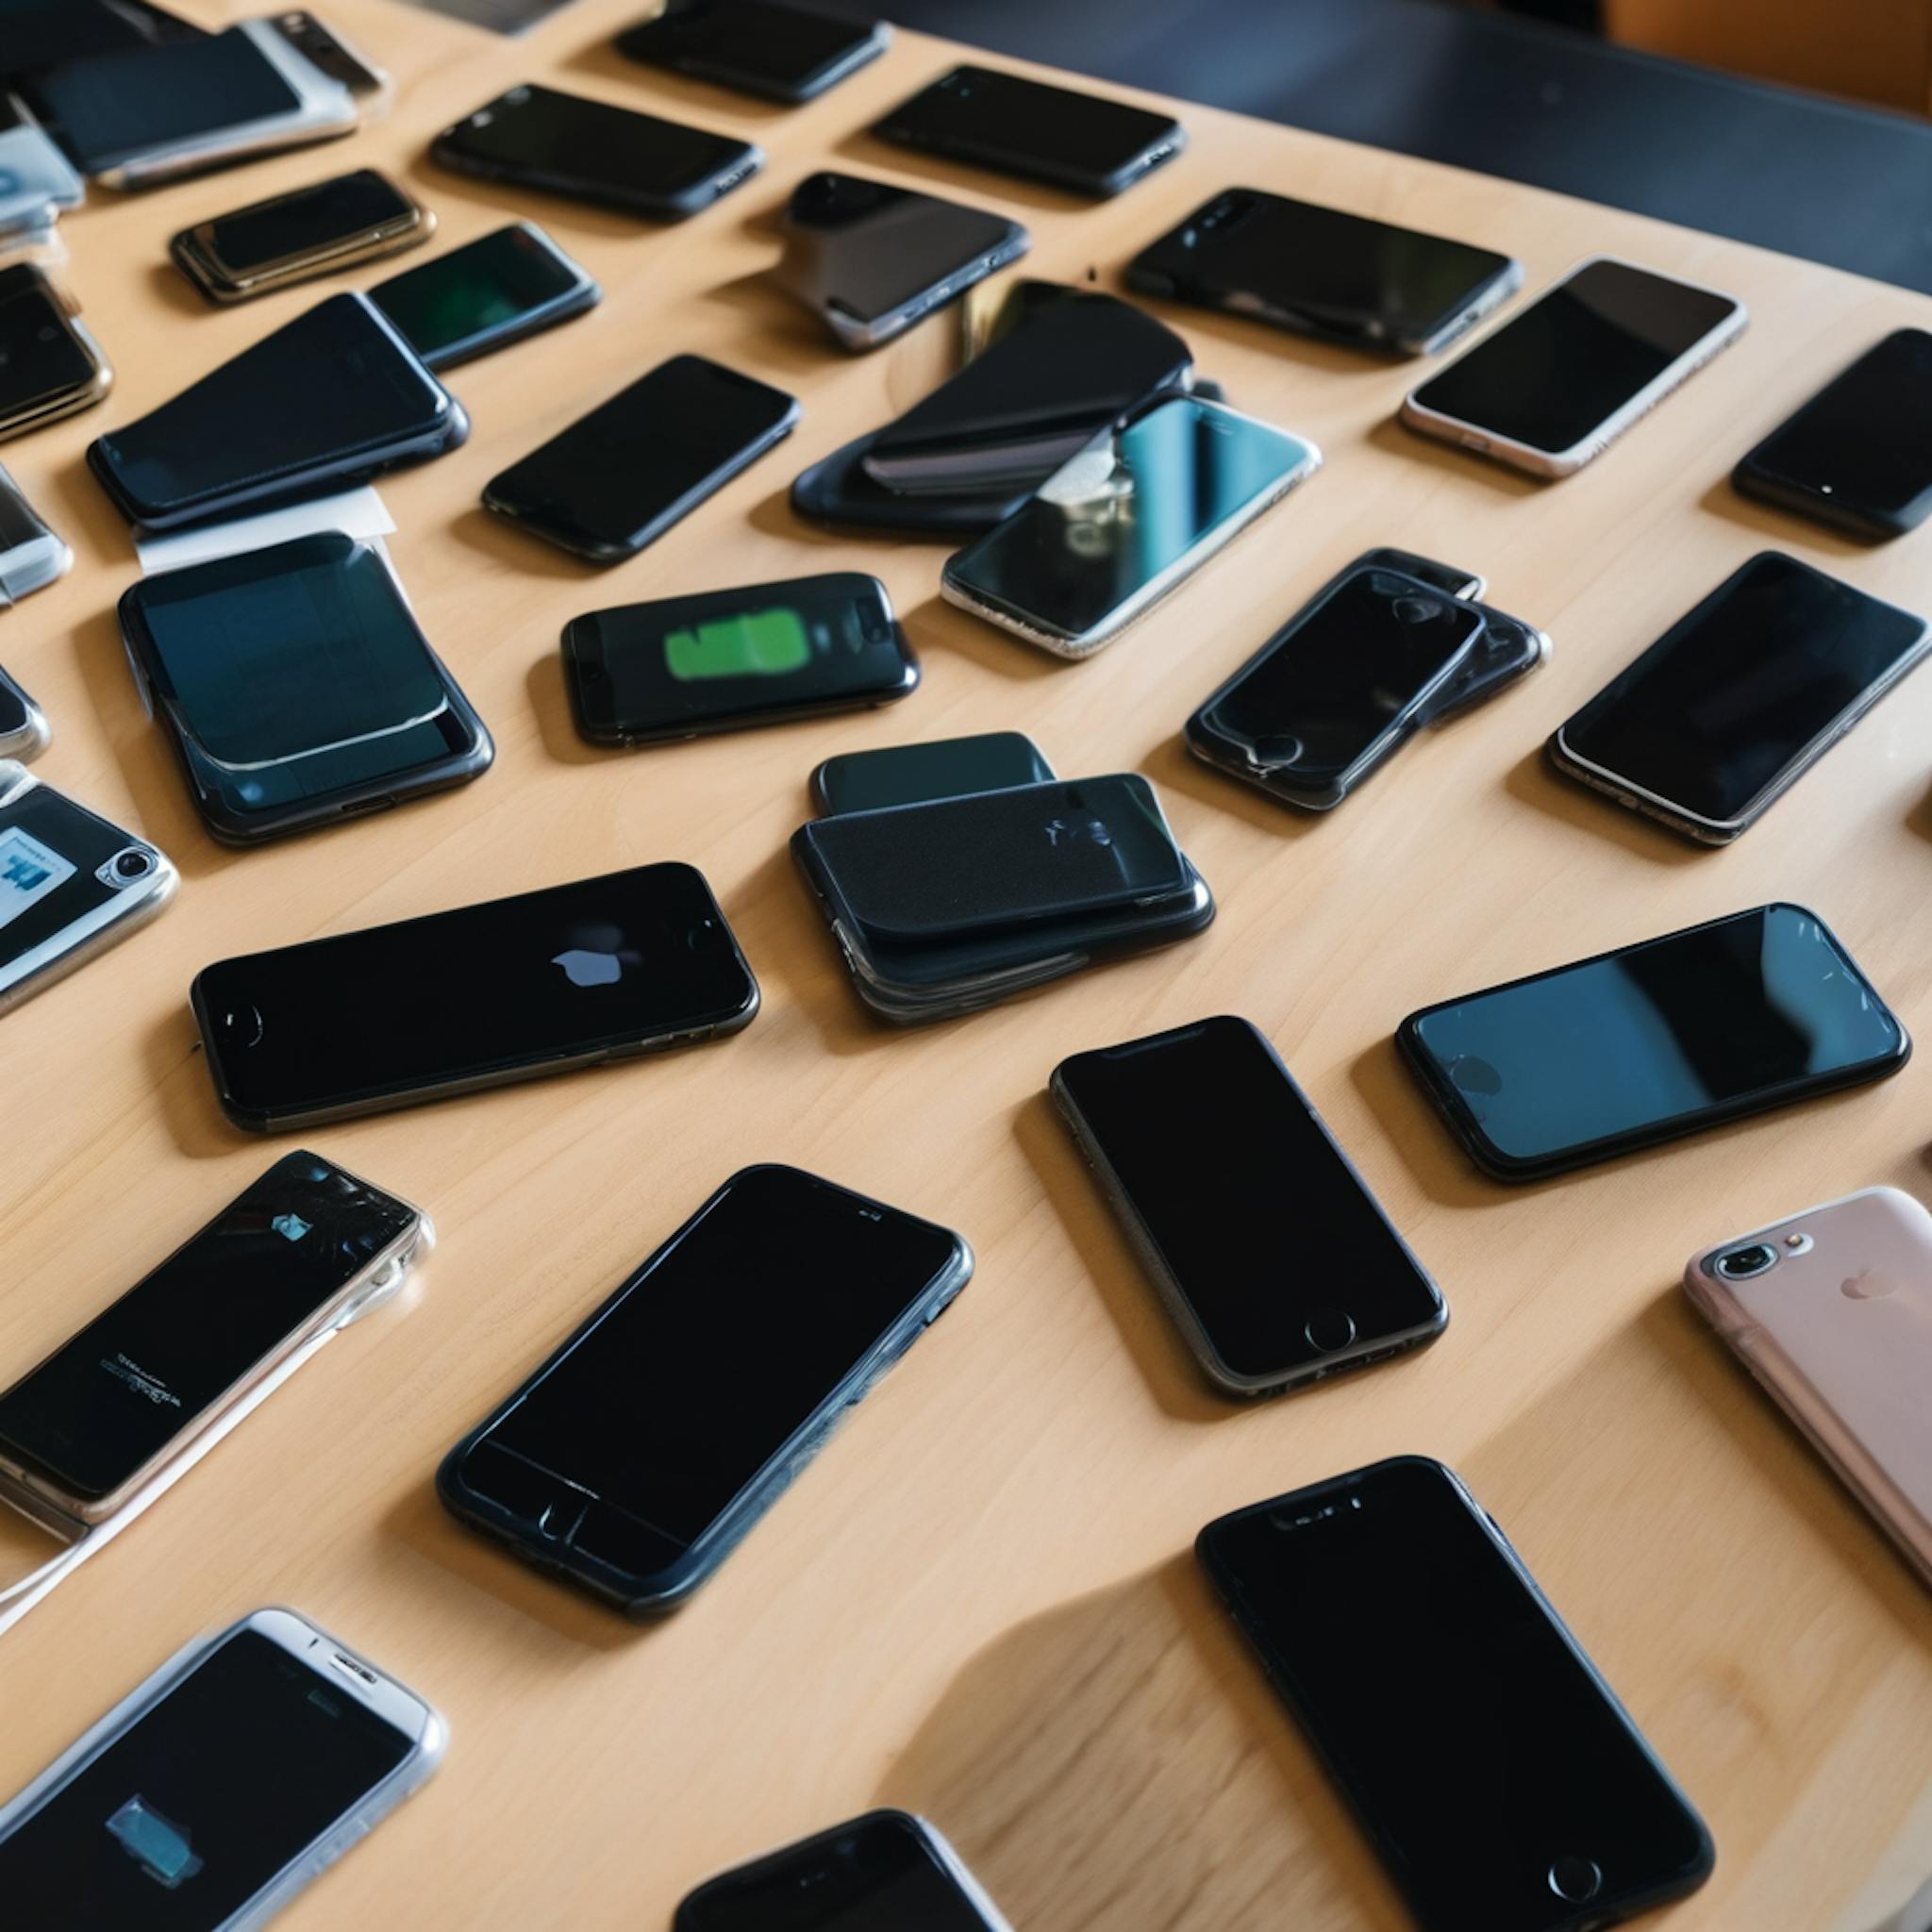 featured image - Le DOJ poursuit Apple pour avoir orchestré un monopole sur le marché des smartphones